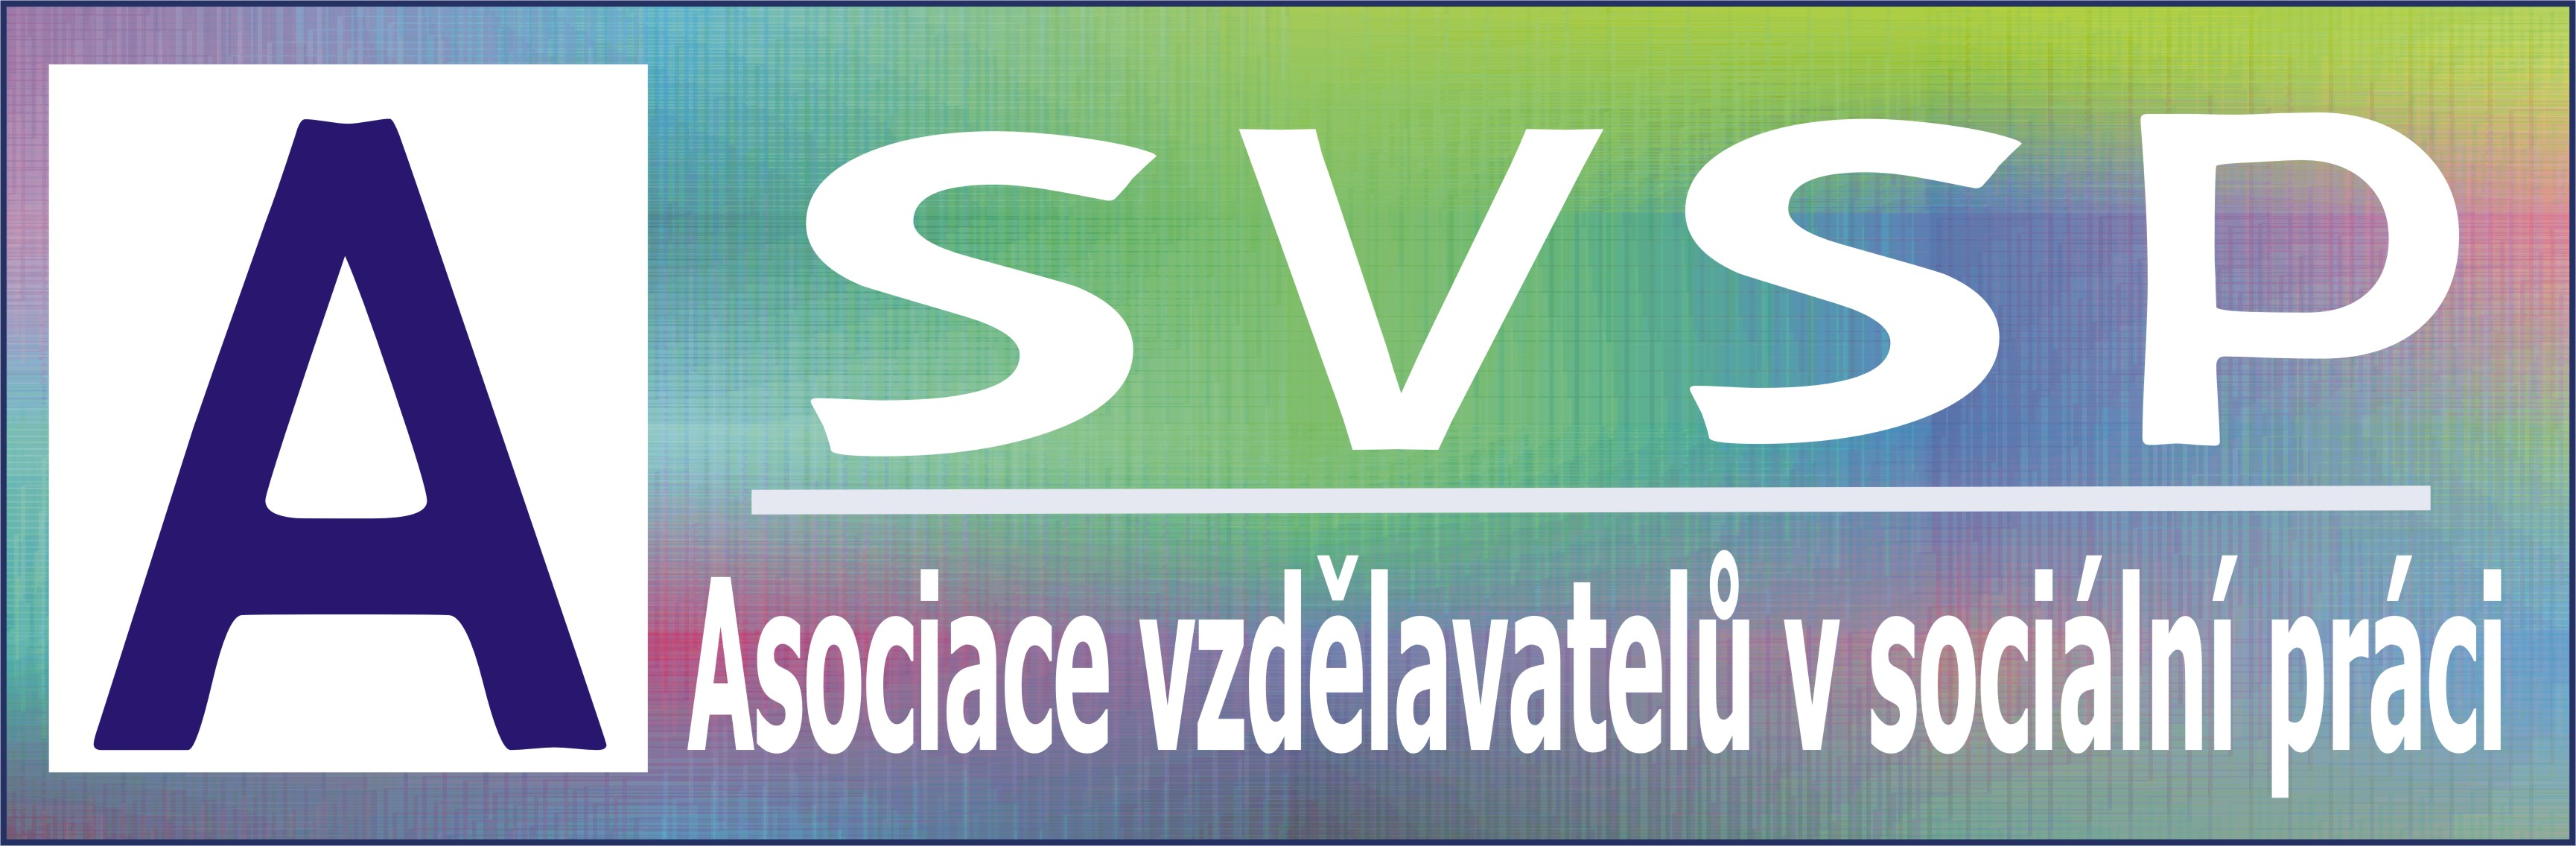 Základním cílem ASVSP je zvyšování odborné kvality vzdělávání v sociální práci v ČR. Dlouhodobým cílem je přispívat ke zdokonalování nabídky a výkonu služeb sociální práce v České republice.